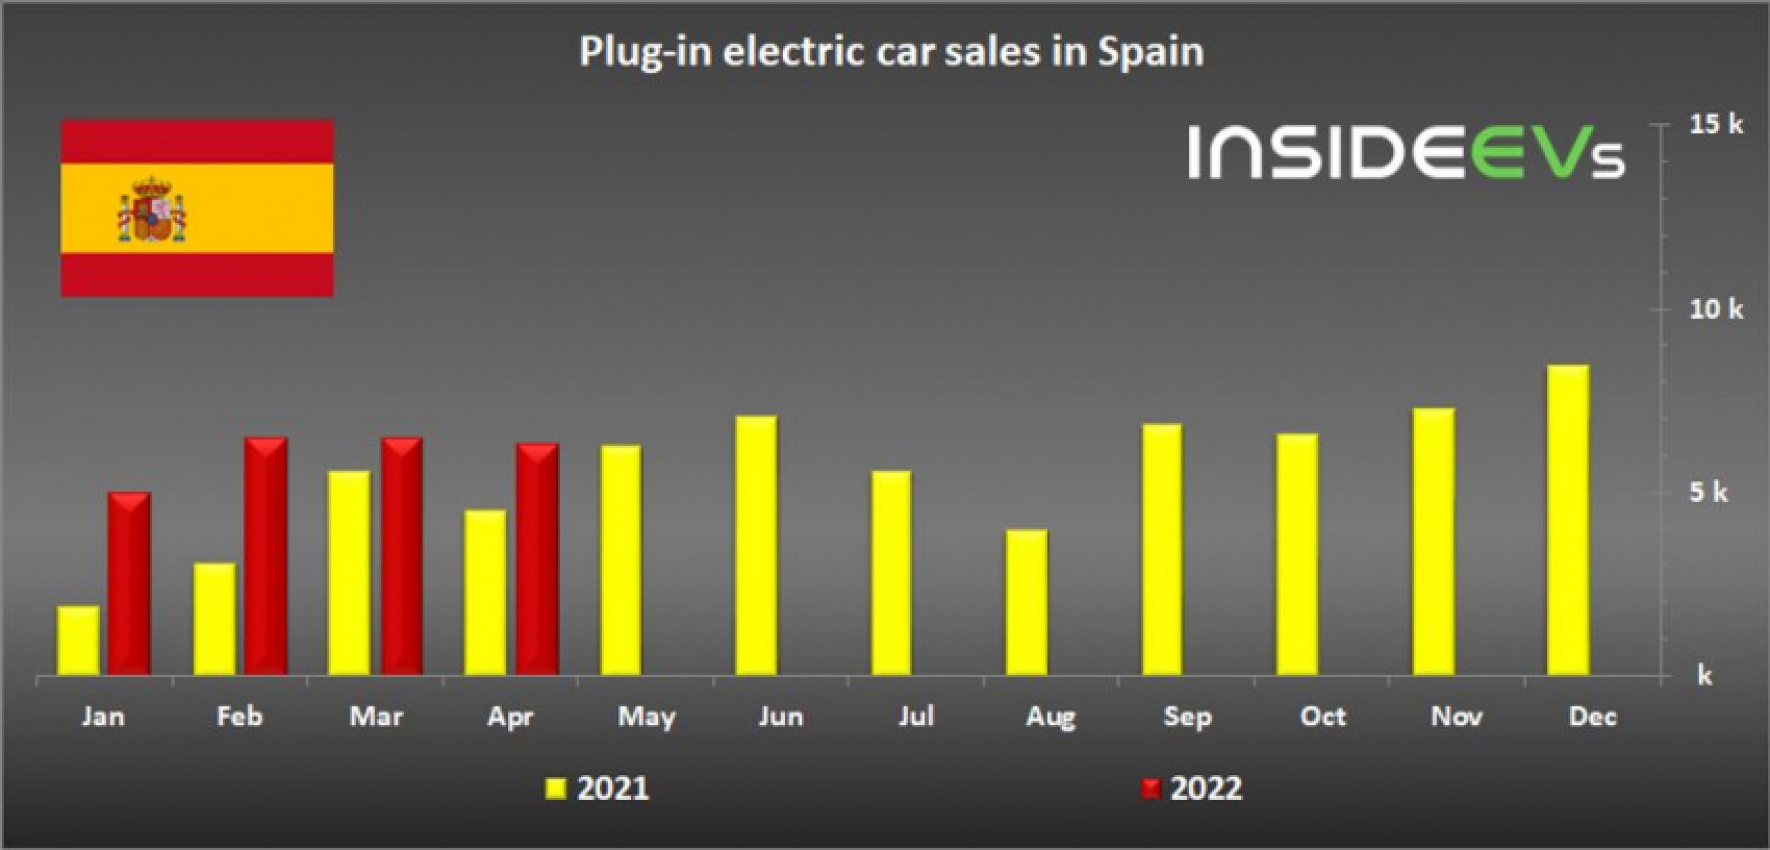 autos, cars, evs, spain: plug-in car sales maintain 10% share